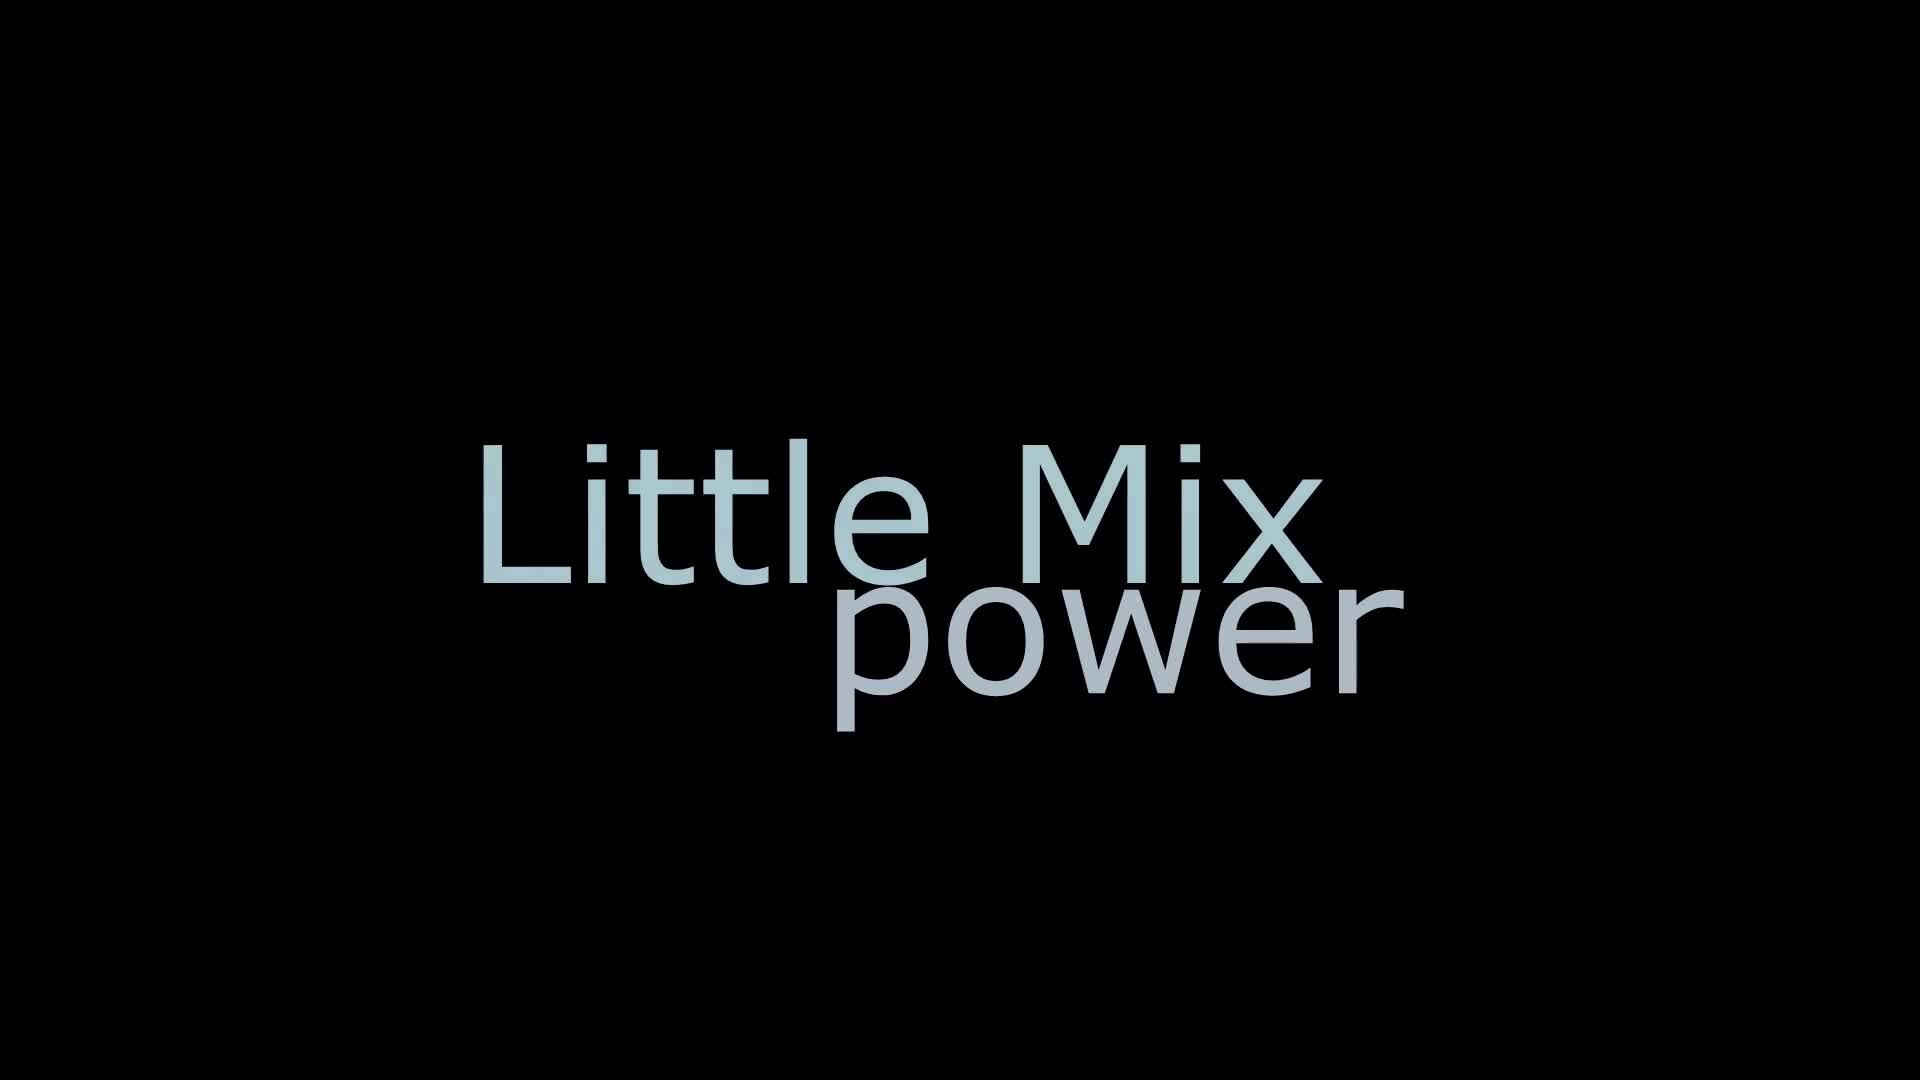 Little Mix Power cover dance WAVEYA